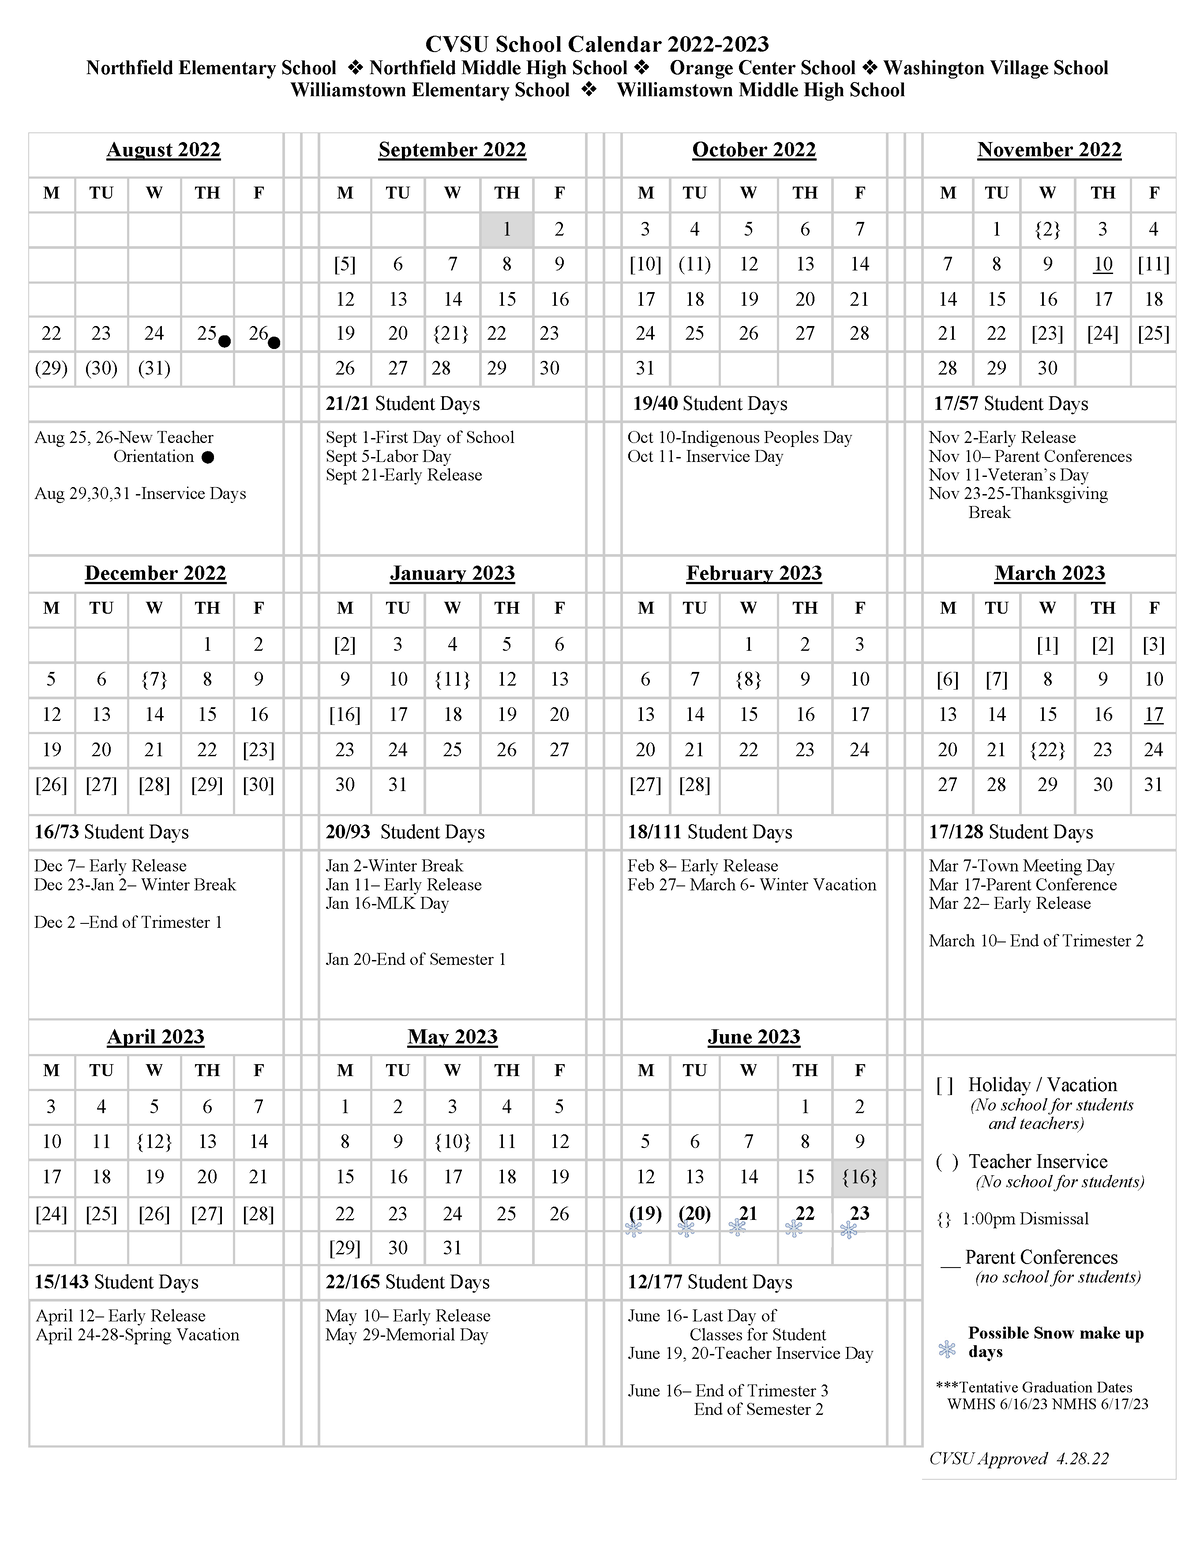 CVSU School Calendar 20222023 August 2022 September 2022 October